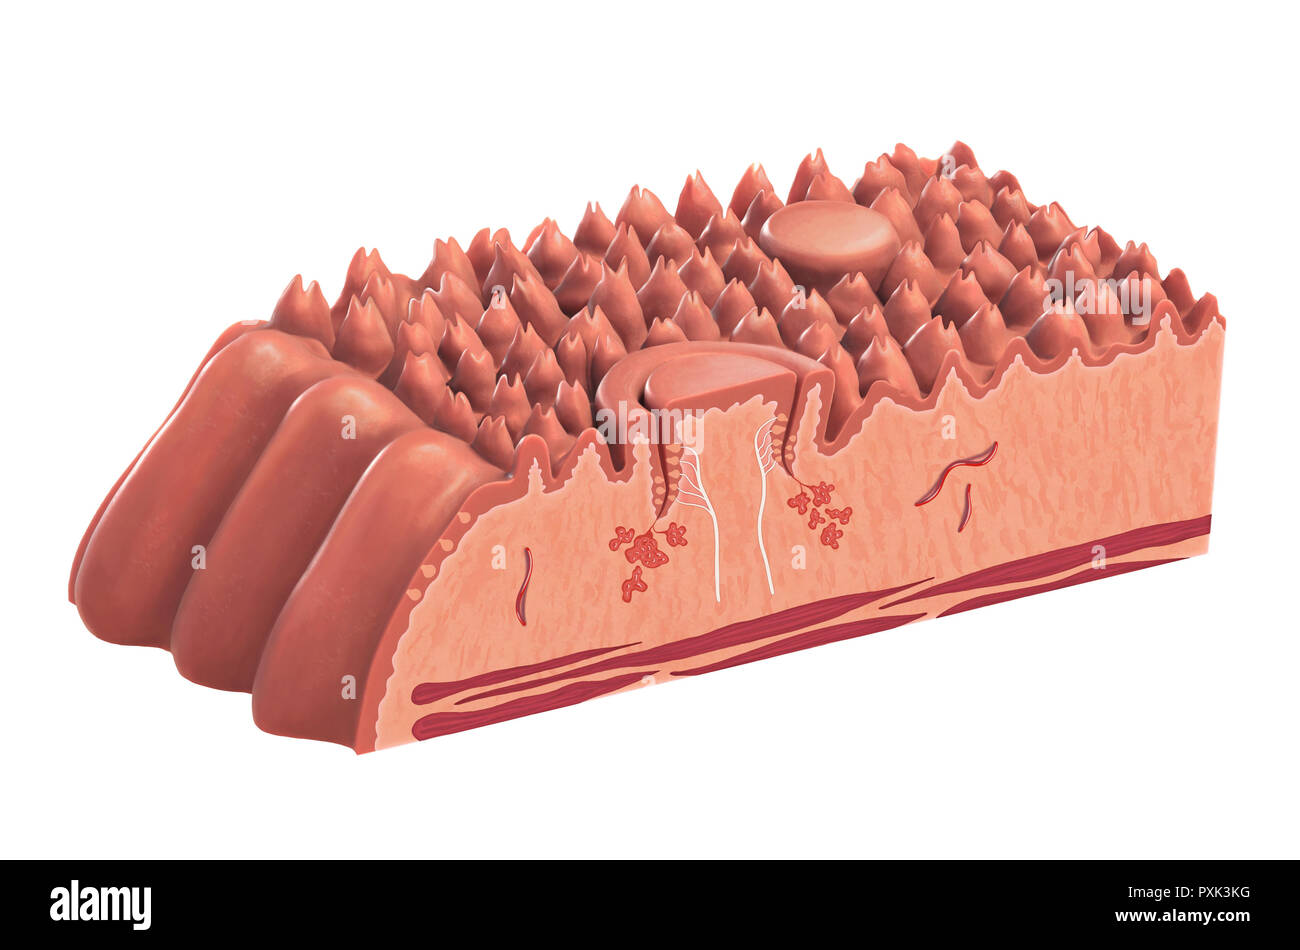 Menschliche Zunge Querschnitt an, seine verschiedenen anatomischen Teile. Digitale Illustration mit inbegriffen. Stockfoto